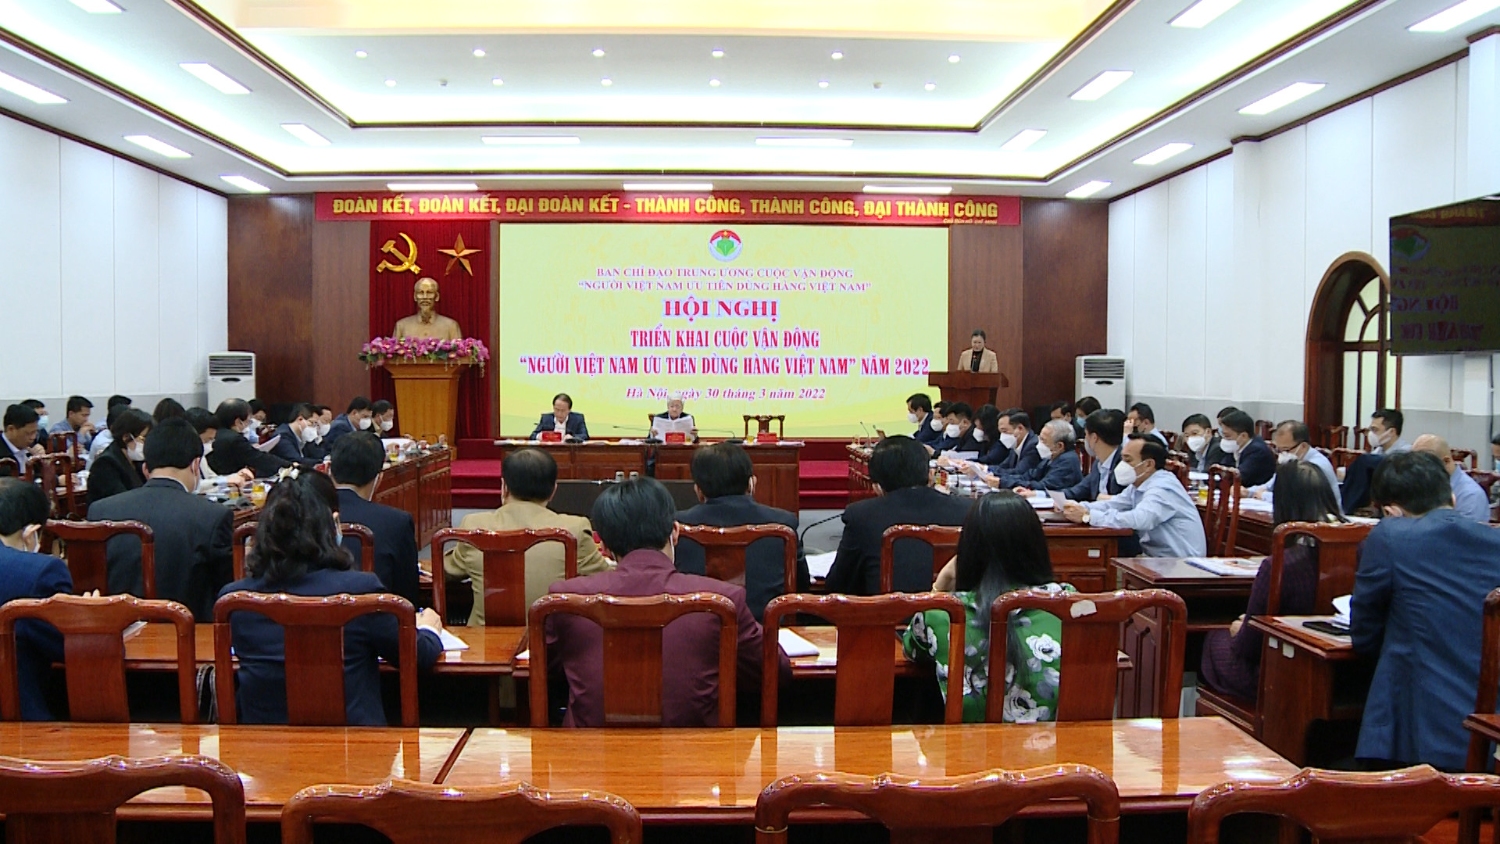 Chủ tịch Nguyễn Kim Hùng tham dự Hội nghị triển khai cuộc vận động “ Người Việt Nam ưu tiên dùng hàng Việt Nam” năm 2022